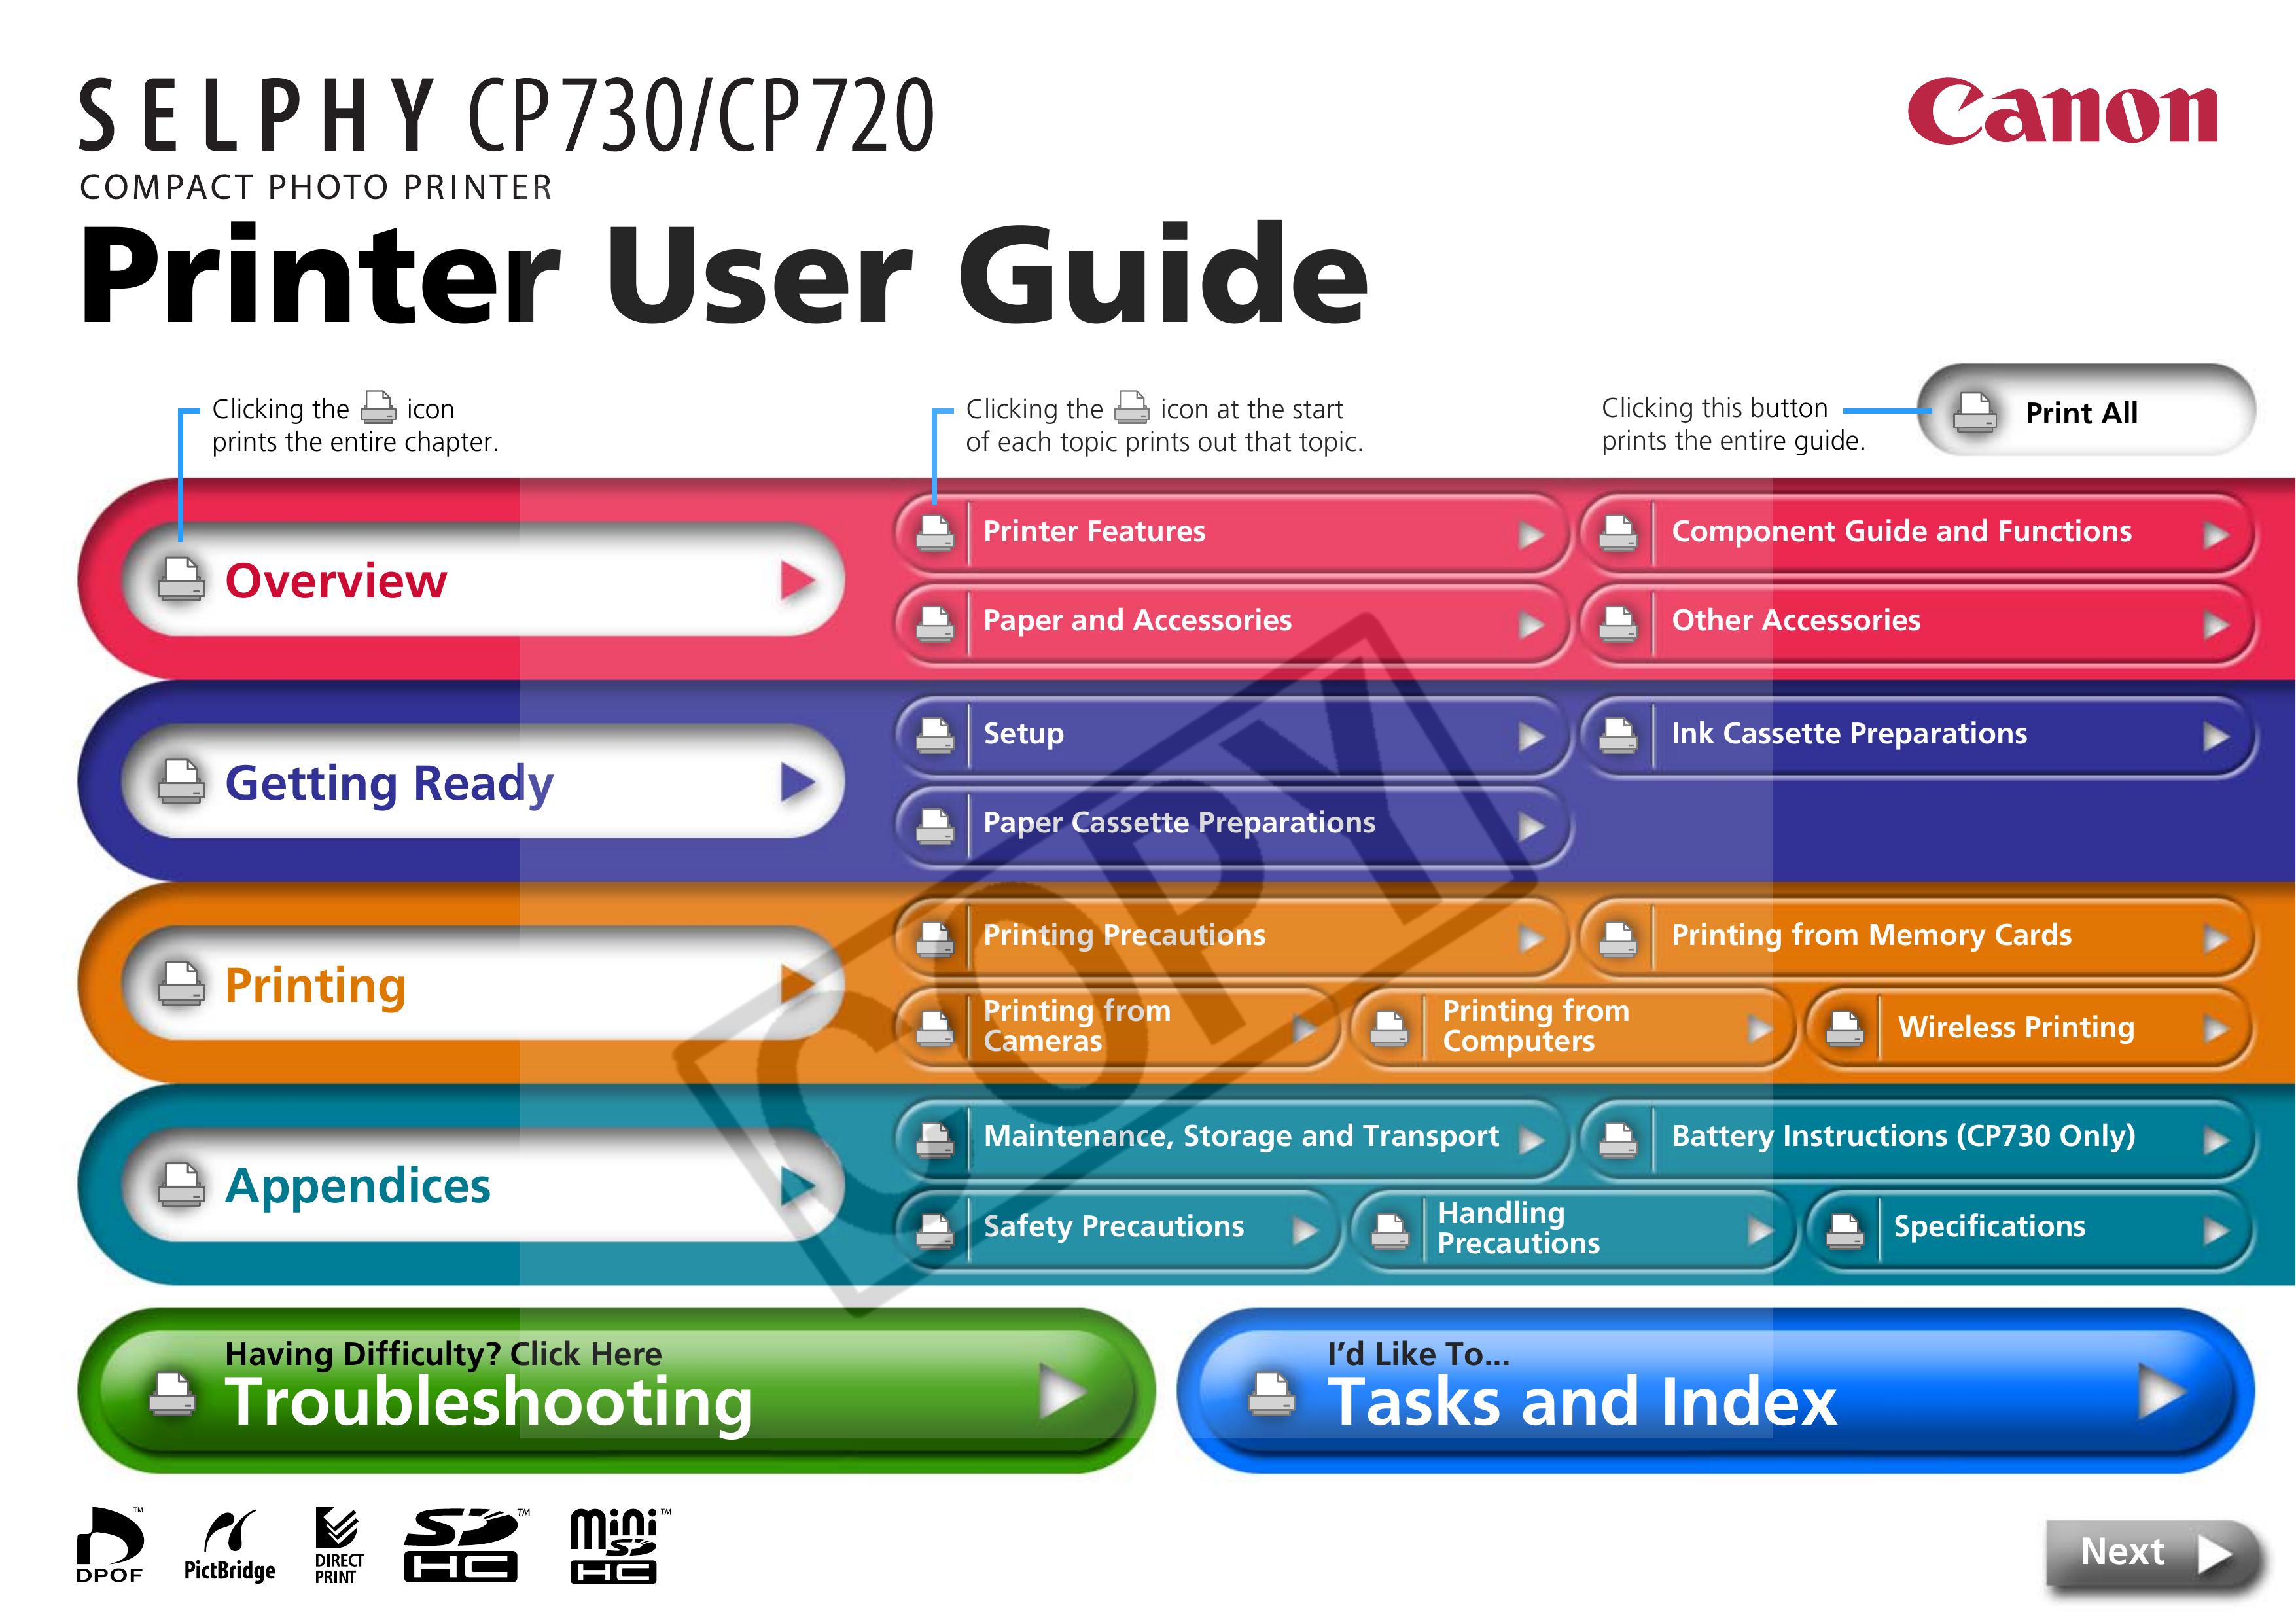 Canon CP720 Photo Printer User Manual